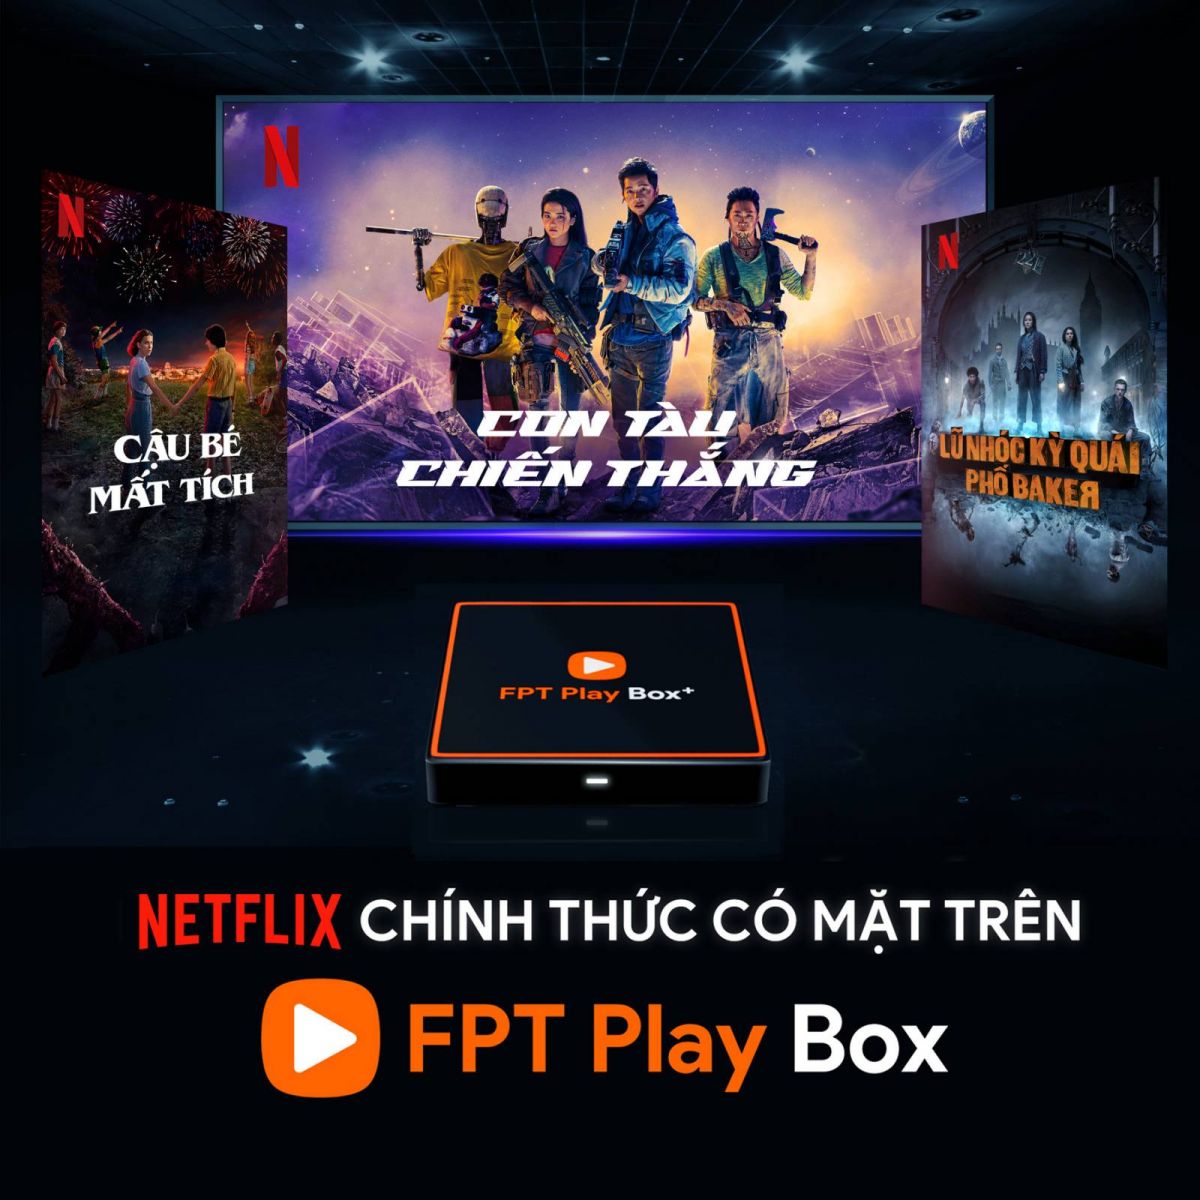 Netflix chính thức có mặt trên FPT Play Box